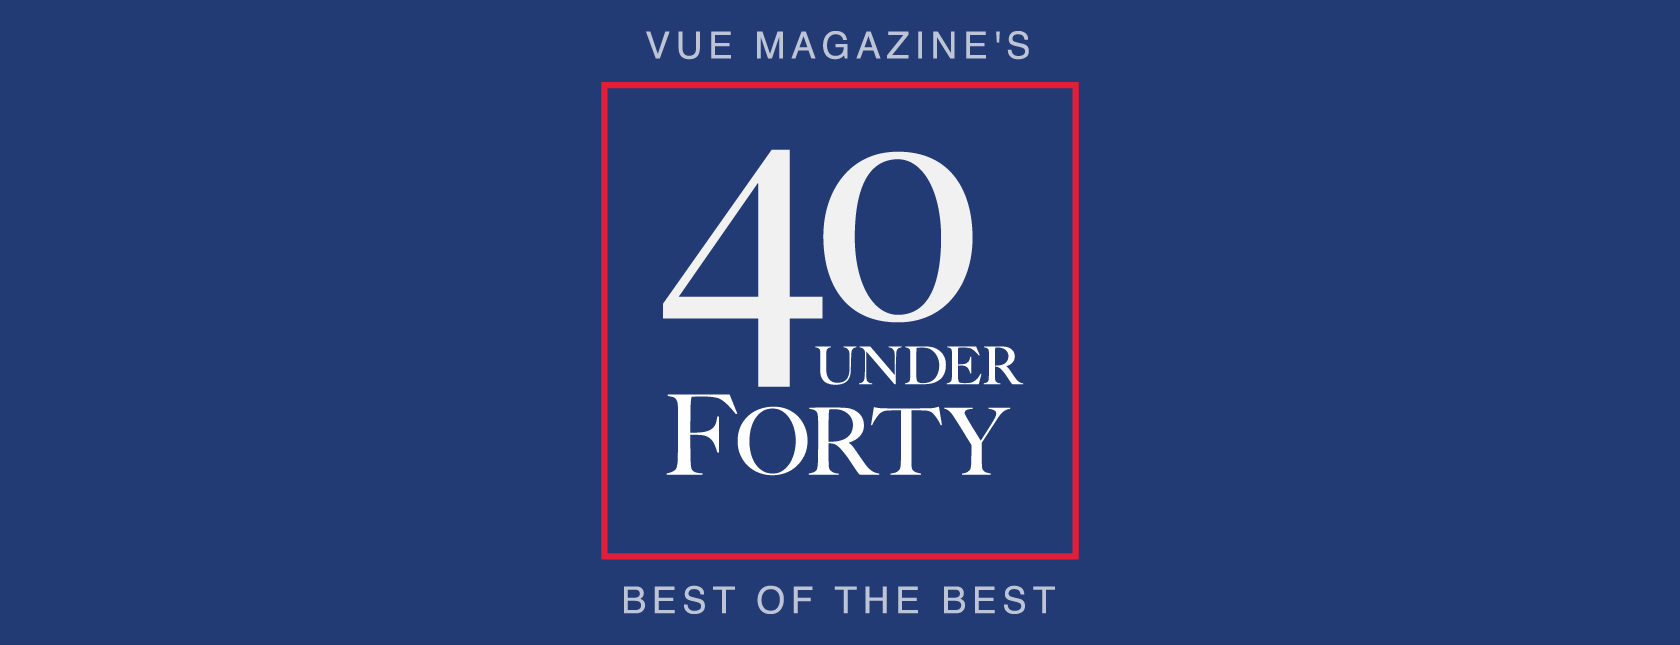 FNB & VUE Magazine Present 40 Under Forty